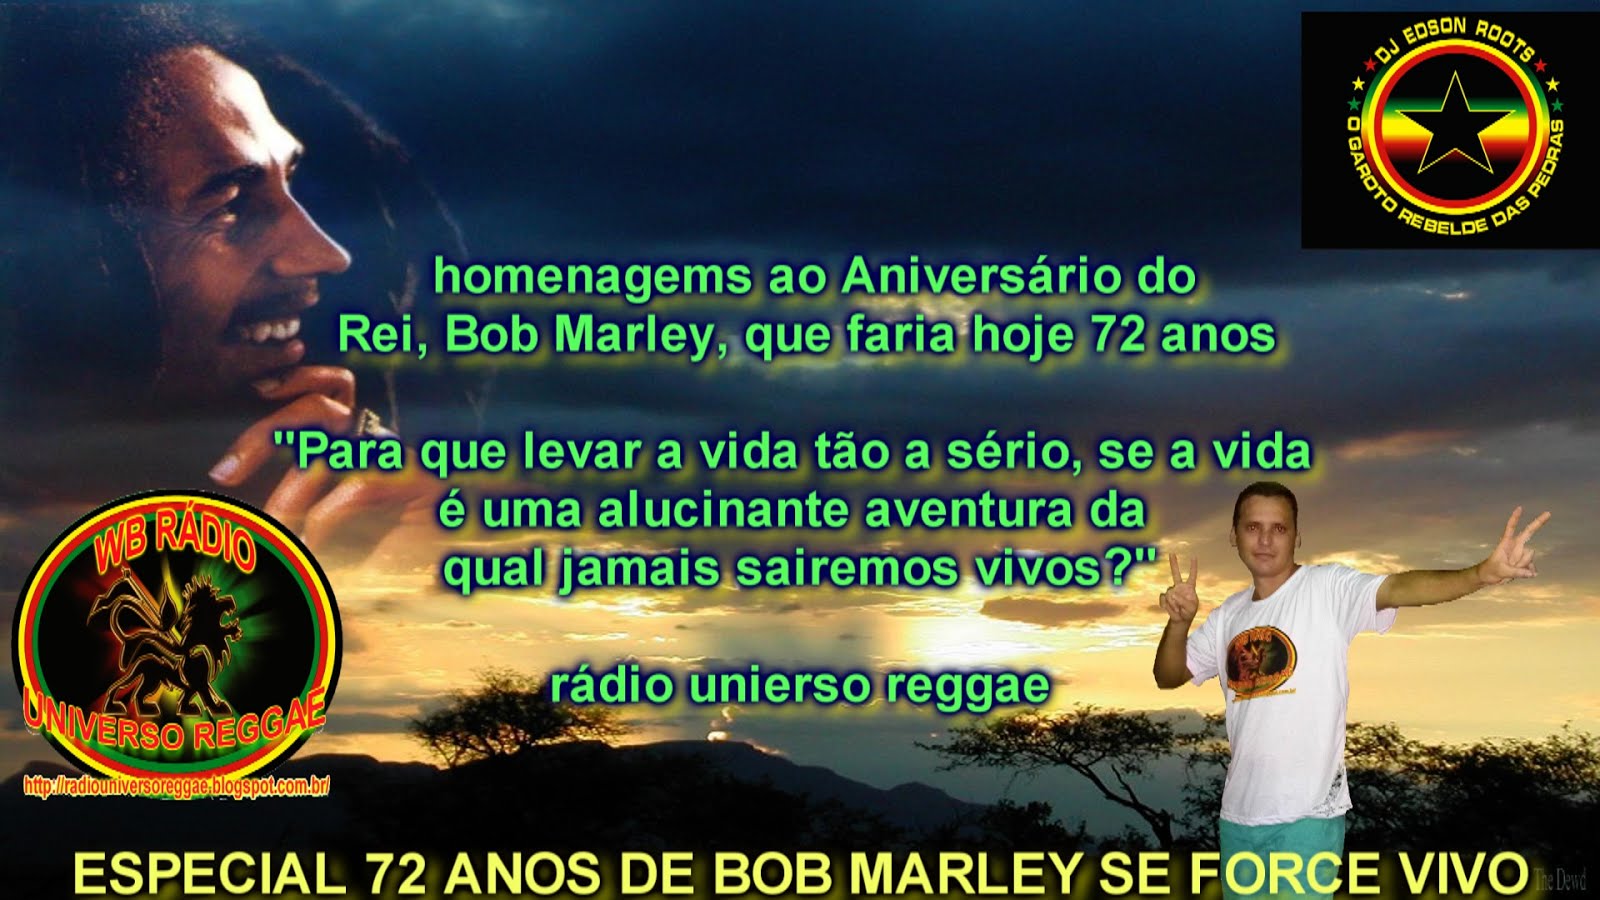 Homenagems do DJ EDSON ROOTS  ao Aniversário do Rei, Bob Marley,